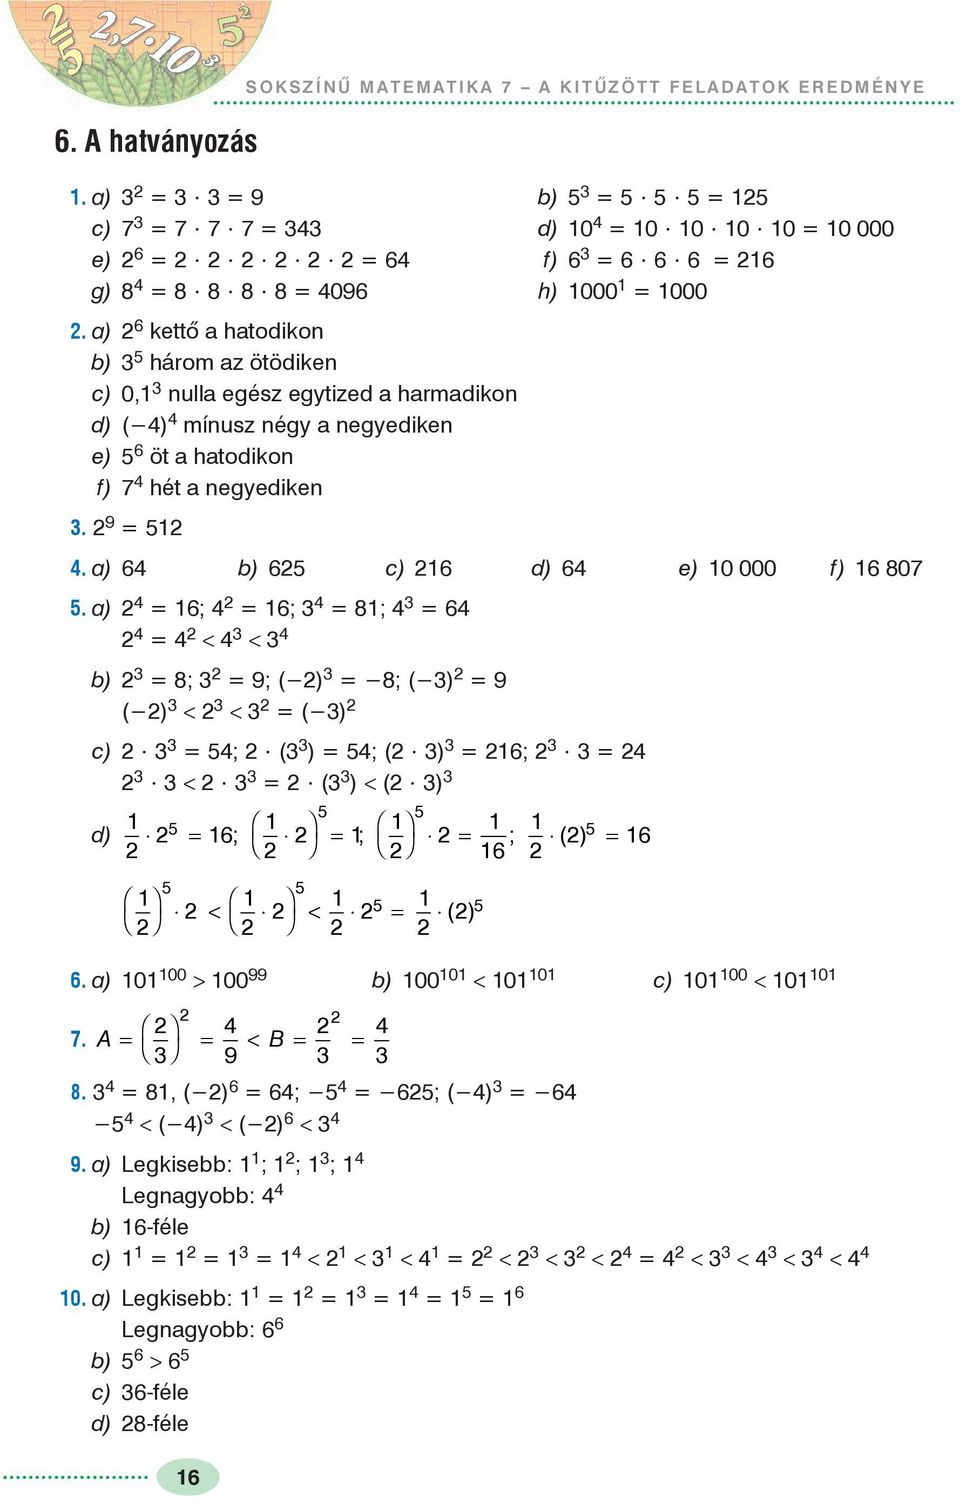 Sokszínû matematika 7. A KITÛZÖTT FELADATOK EREDMÉNYE - PDF Free Download